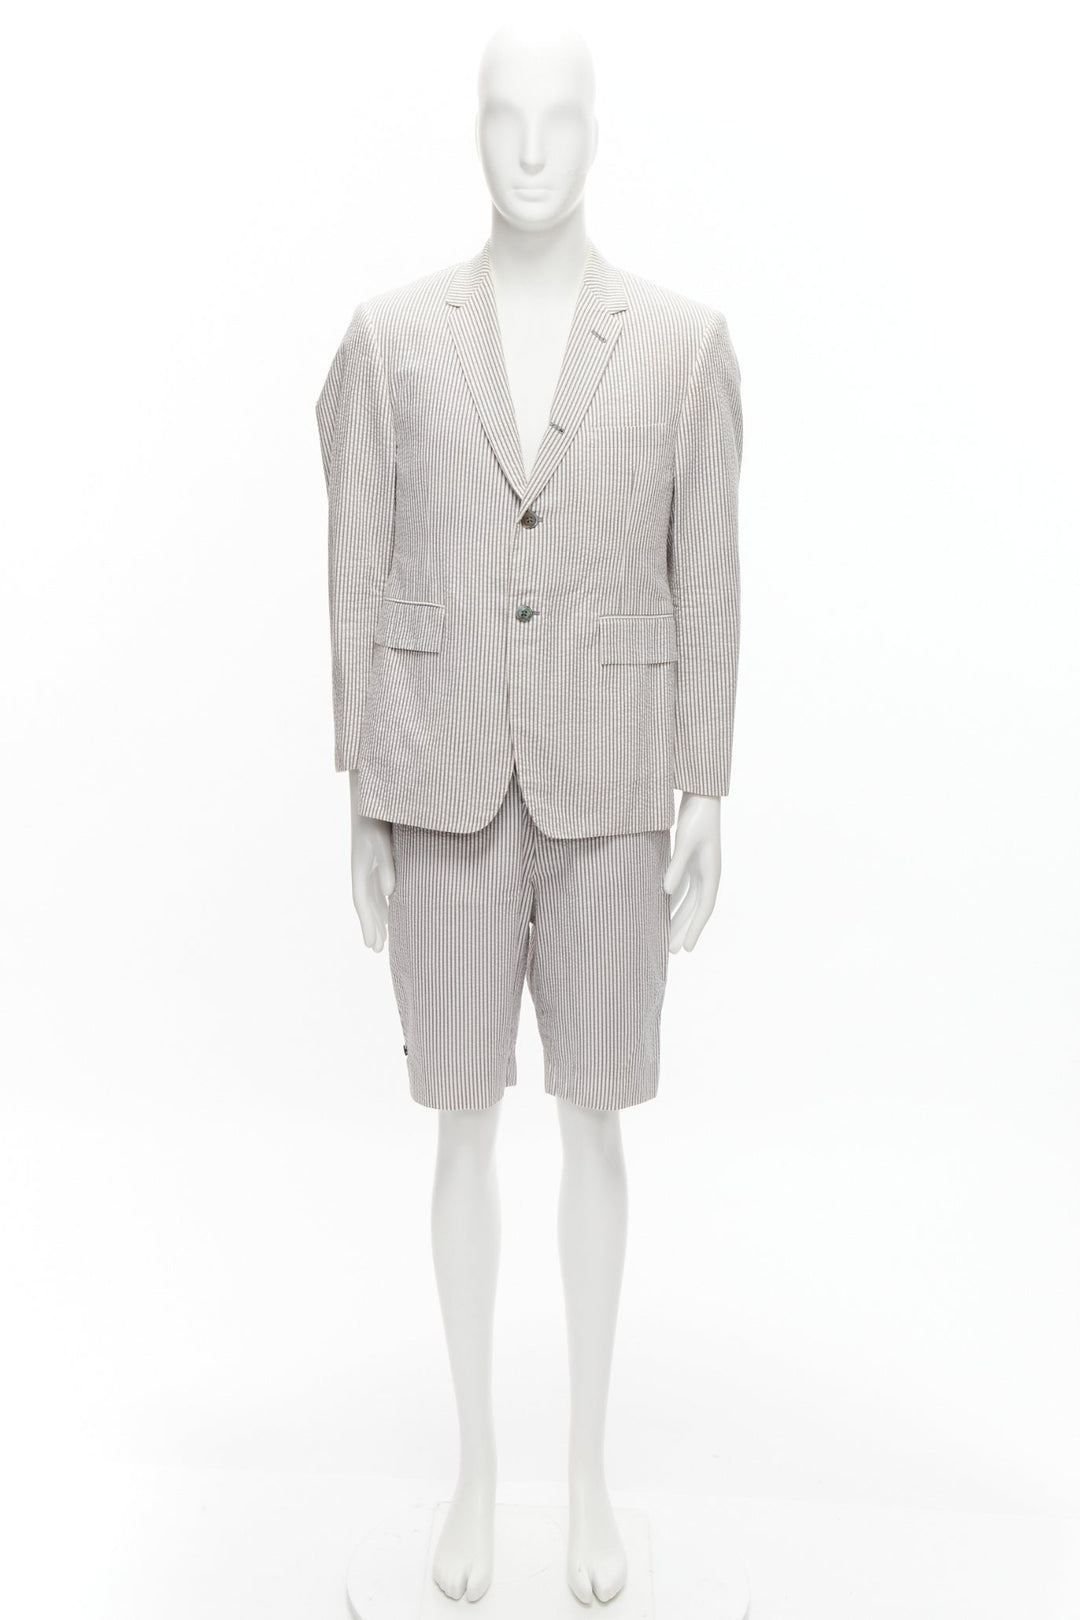 THOM BROWNE grey white striped seersucker blazer jacket shorts suit Sz. 3 L